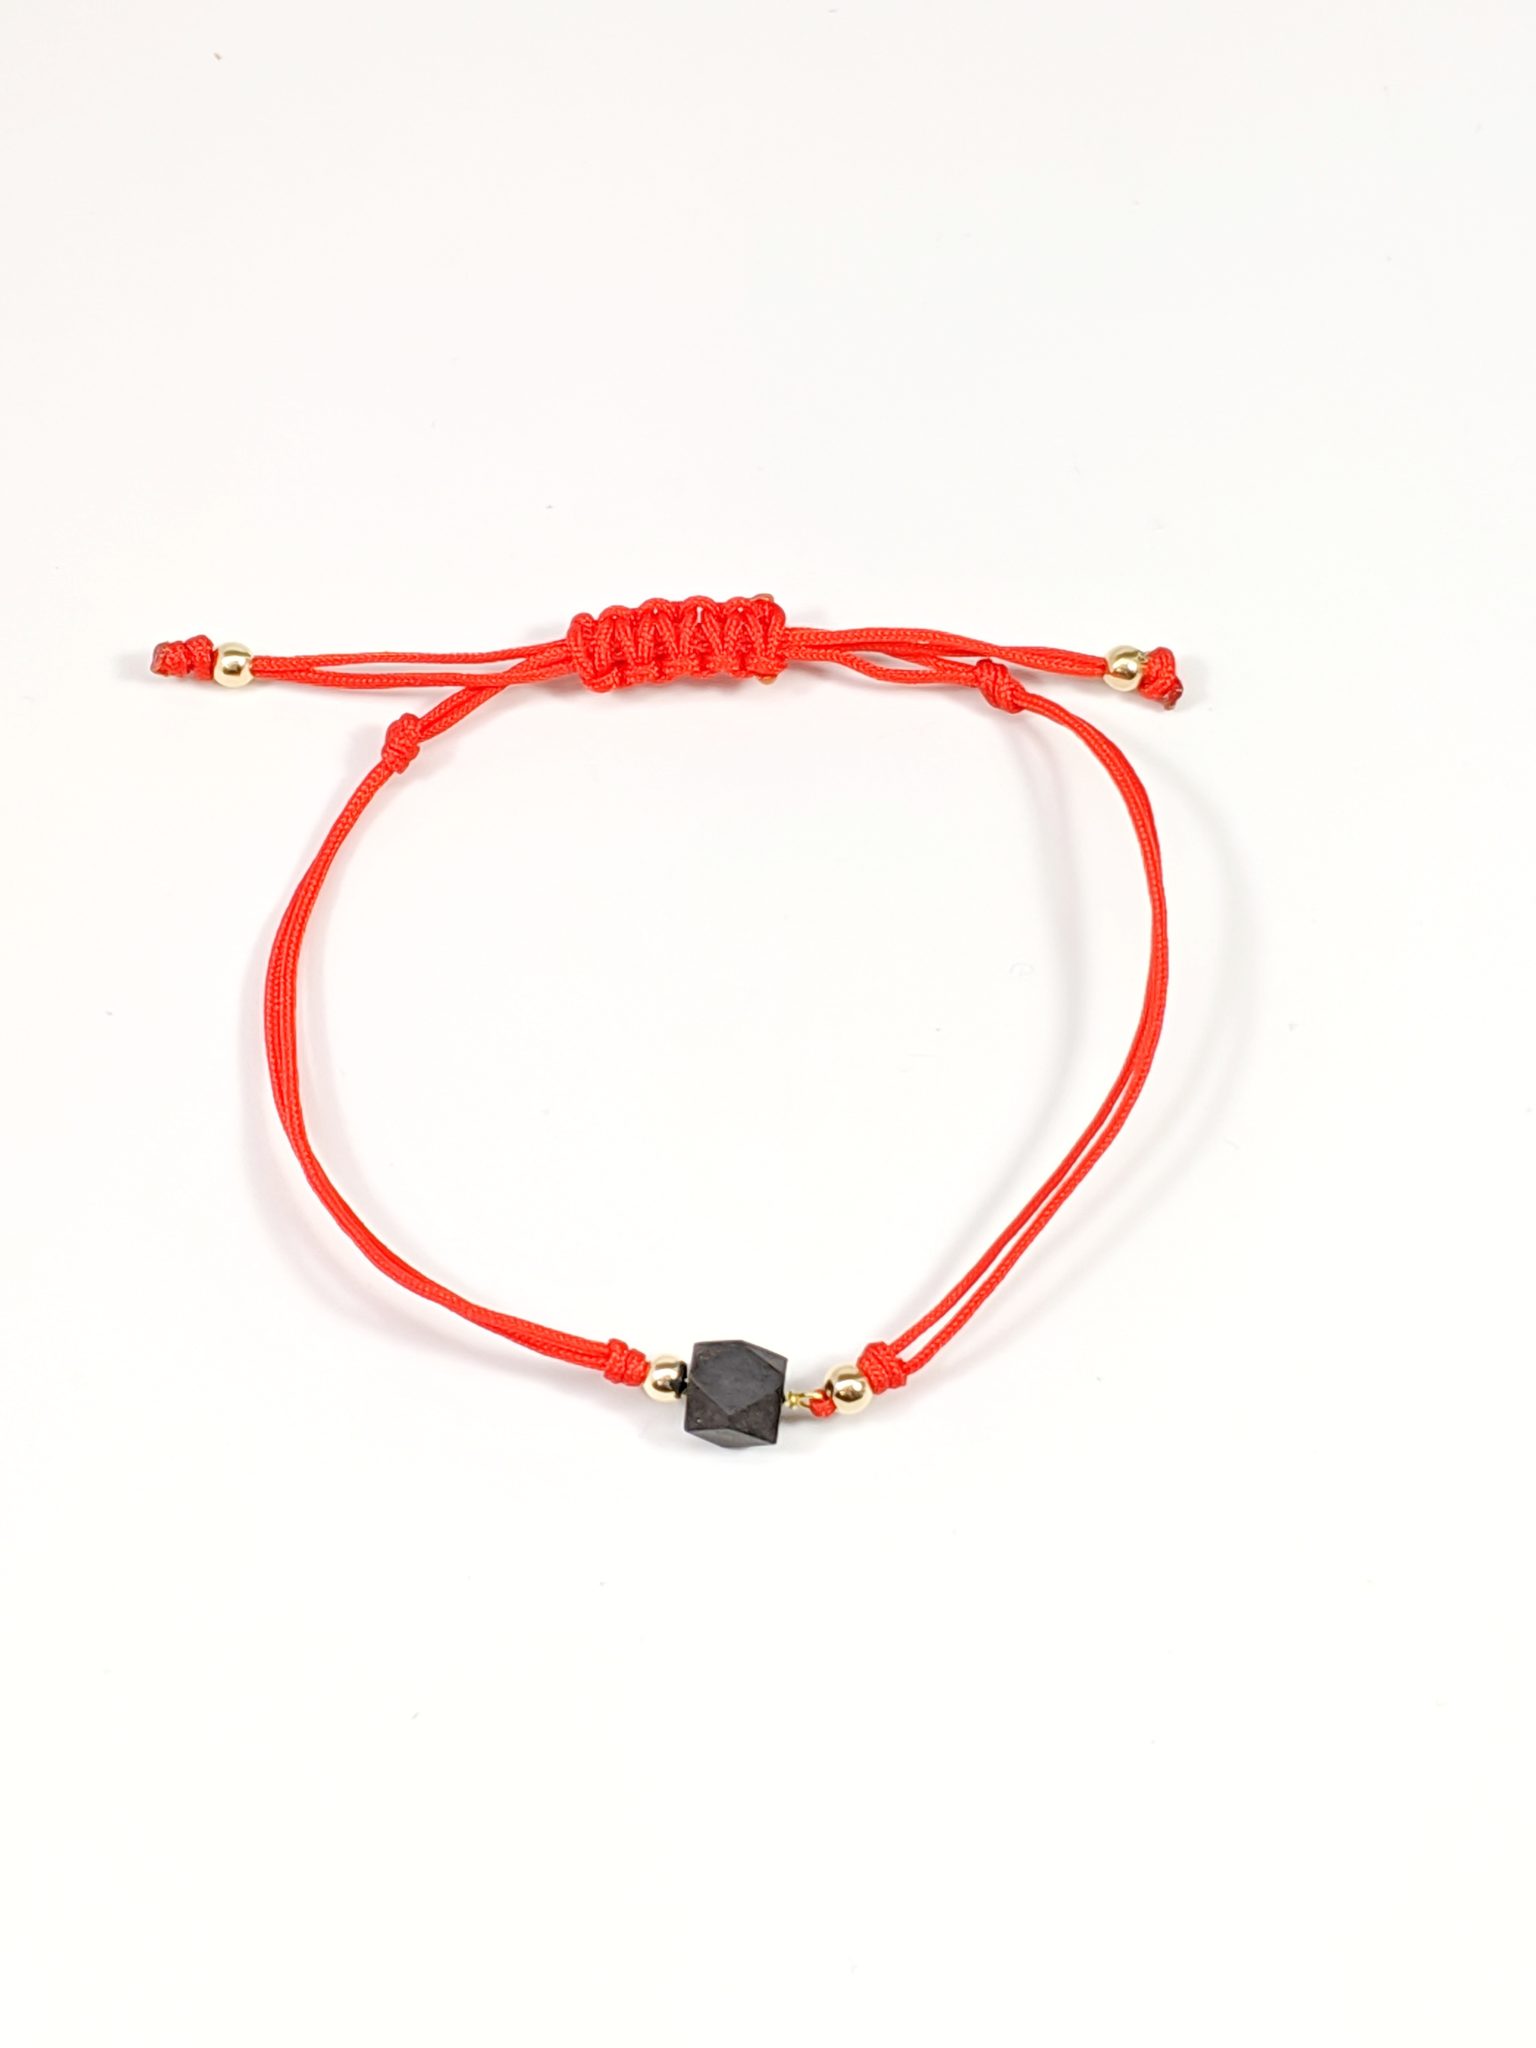 Red String Bracelets